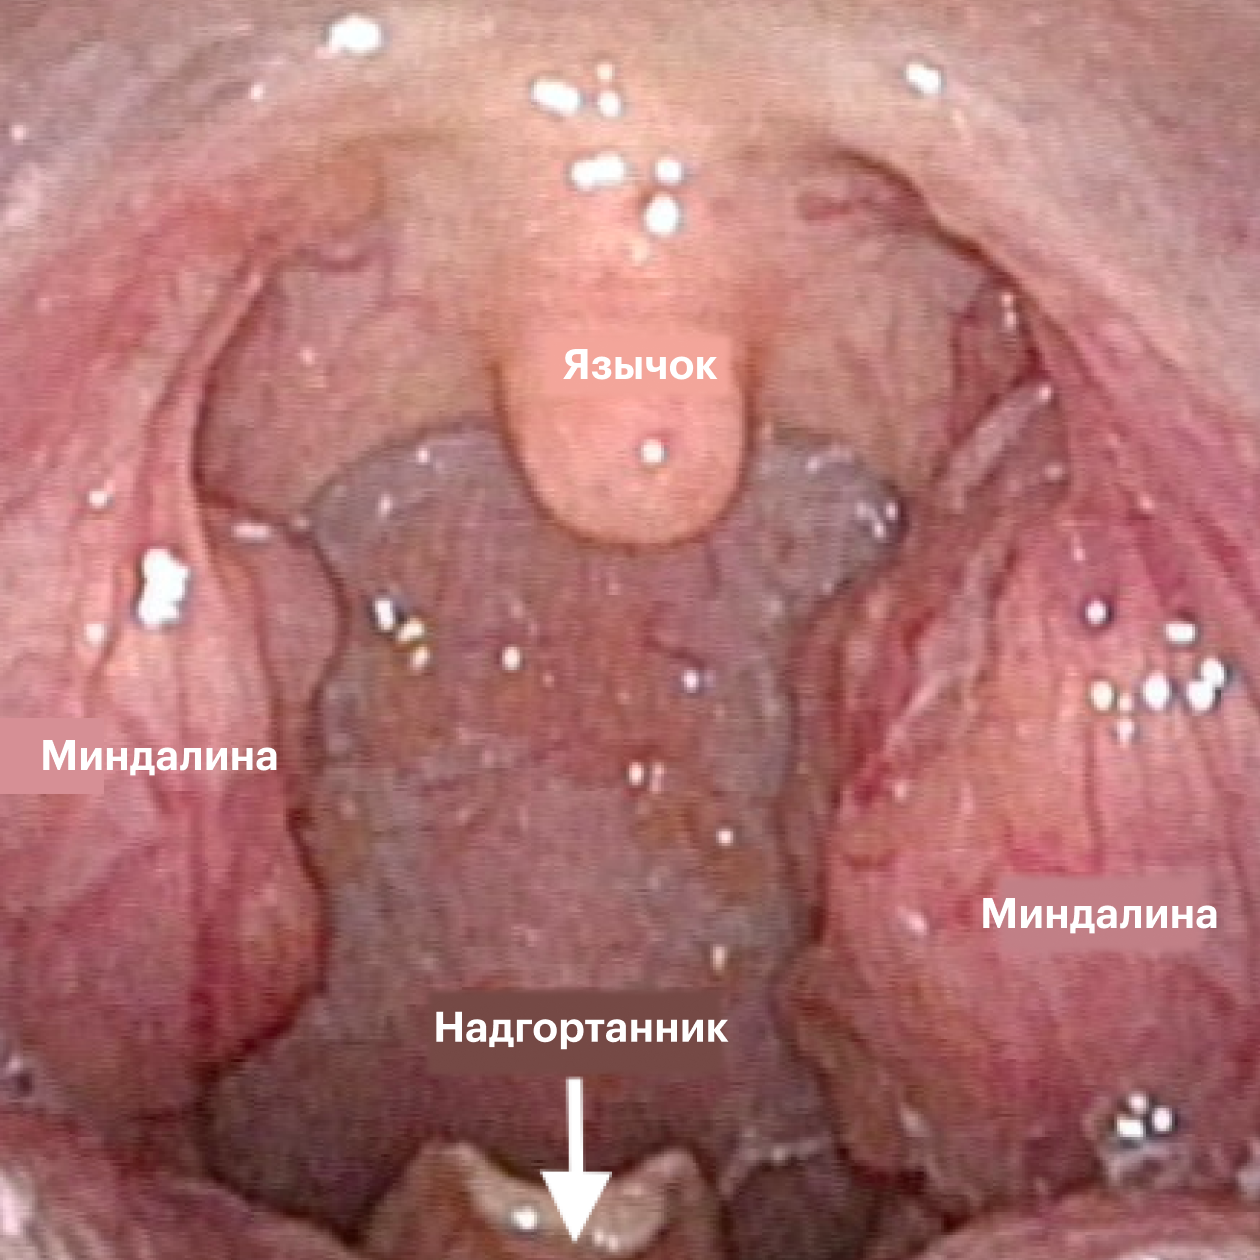 Воспаленное горло (sore throat) - фарингит, тонзиллит, ангина